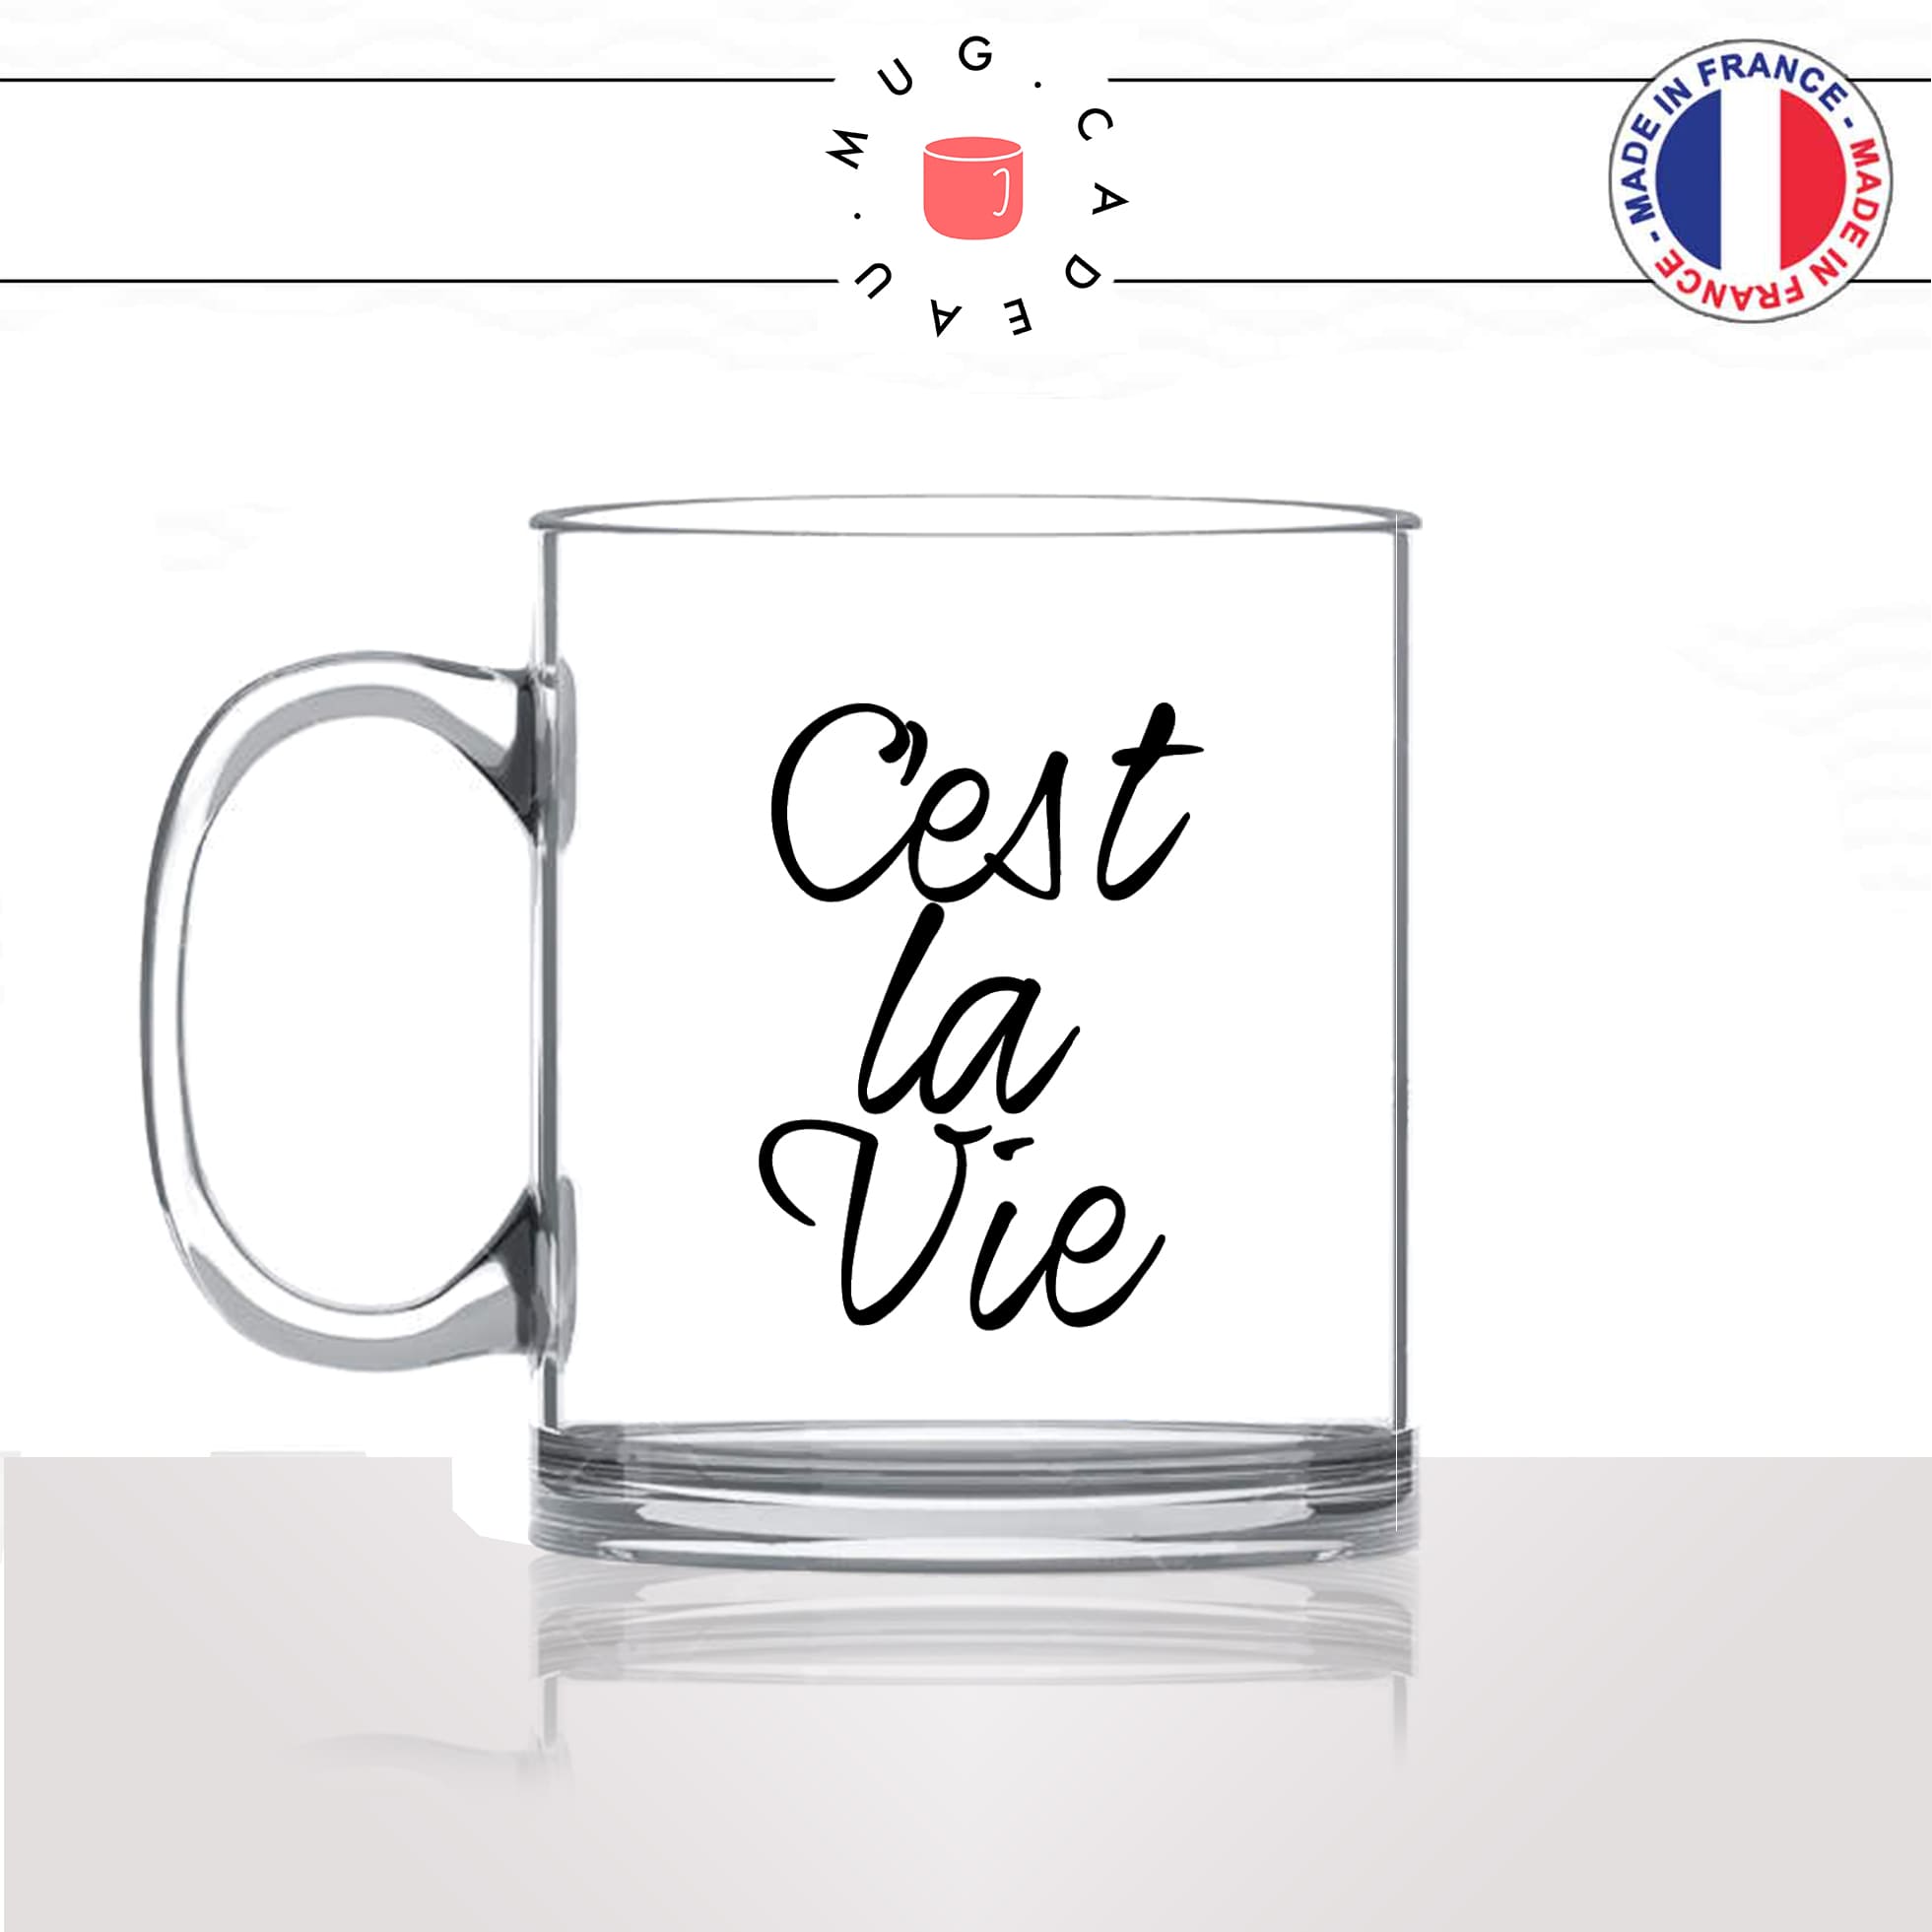 mug-tasse-en-verre-transparent-glass-unique-cest-la-vie-paris-france-francais-homme-femme-humour-fun-cool-idée-cadeau-original-personnalisé